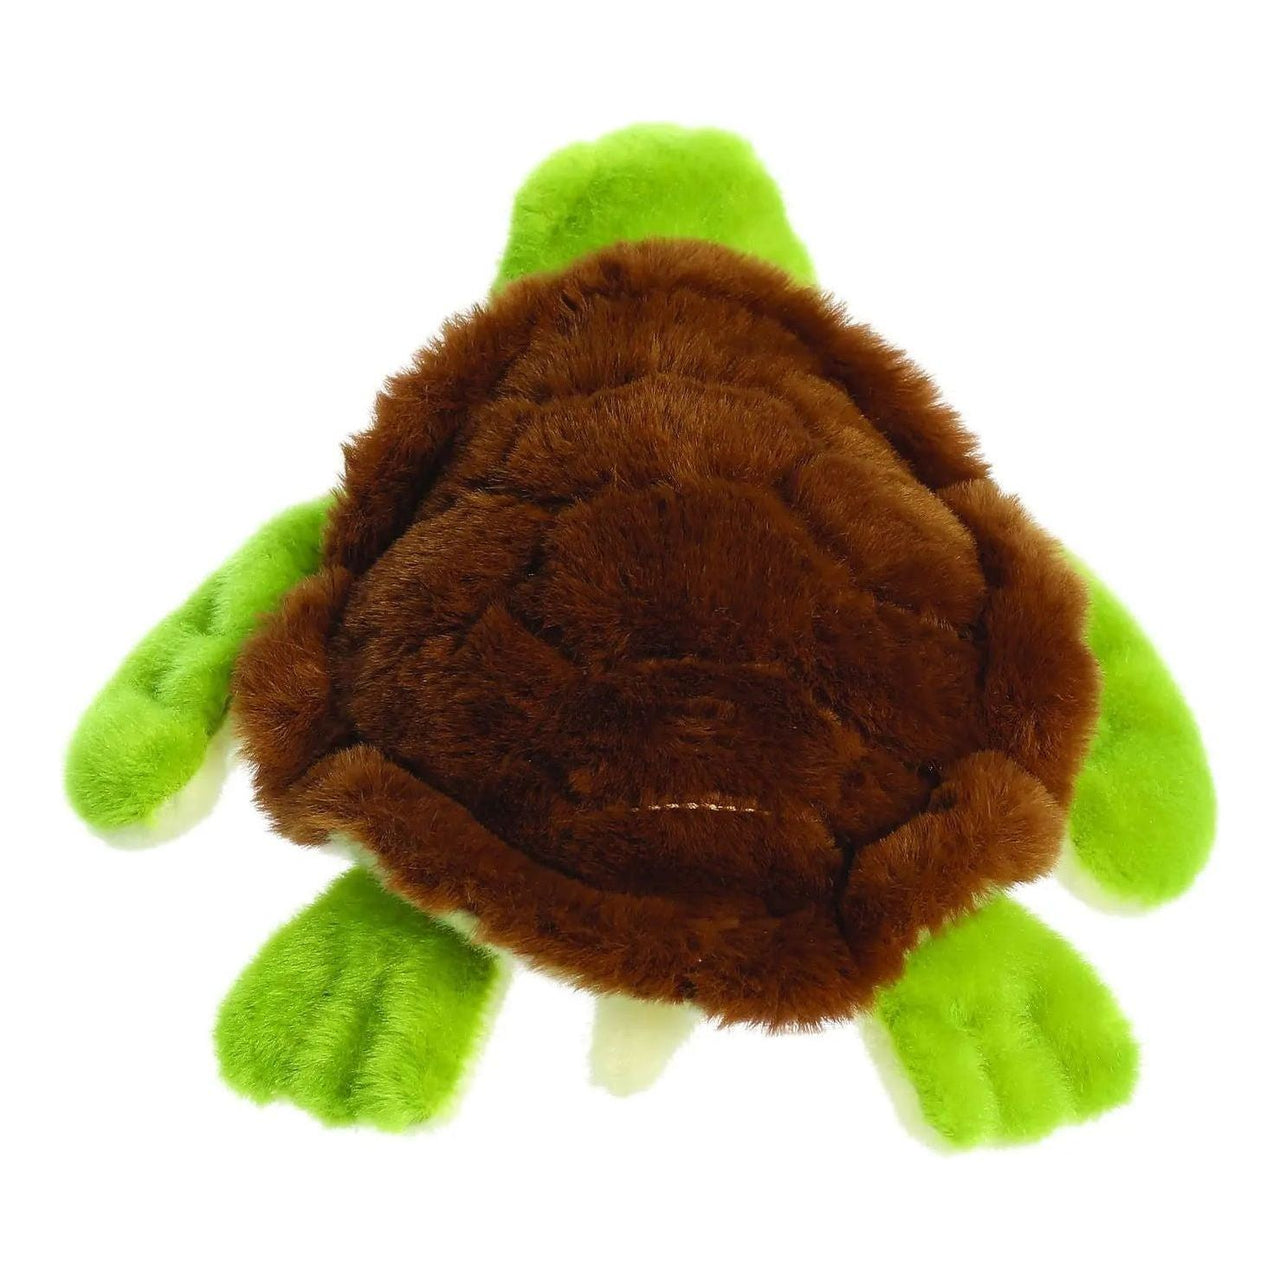 Eco Nation Turtle 10.5" Plush Toy Aurora